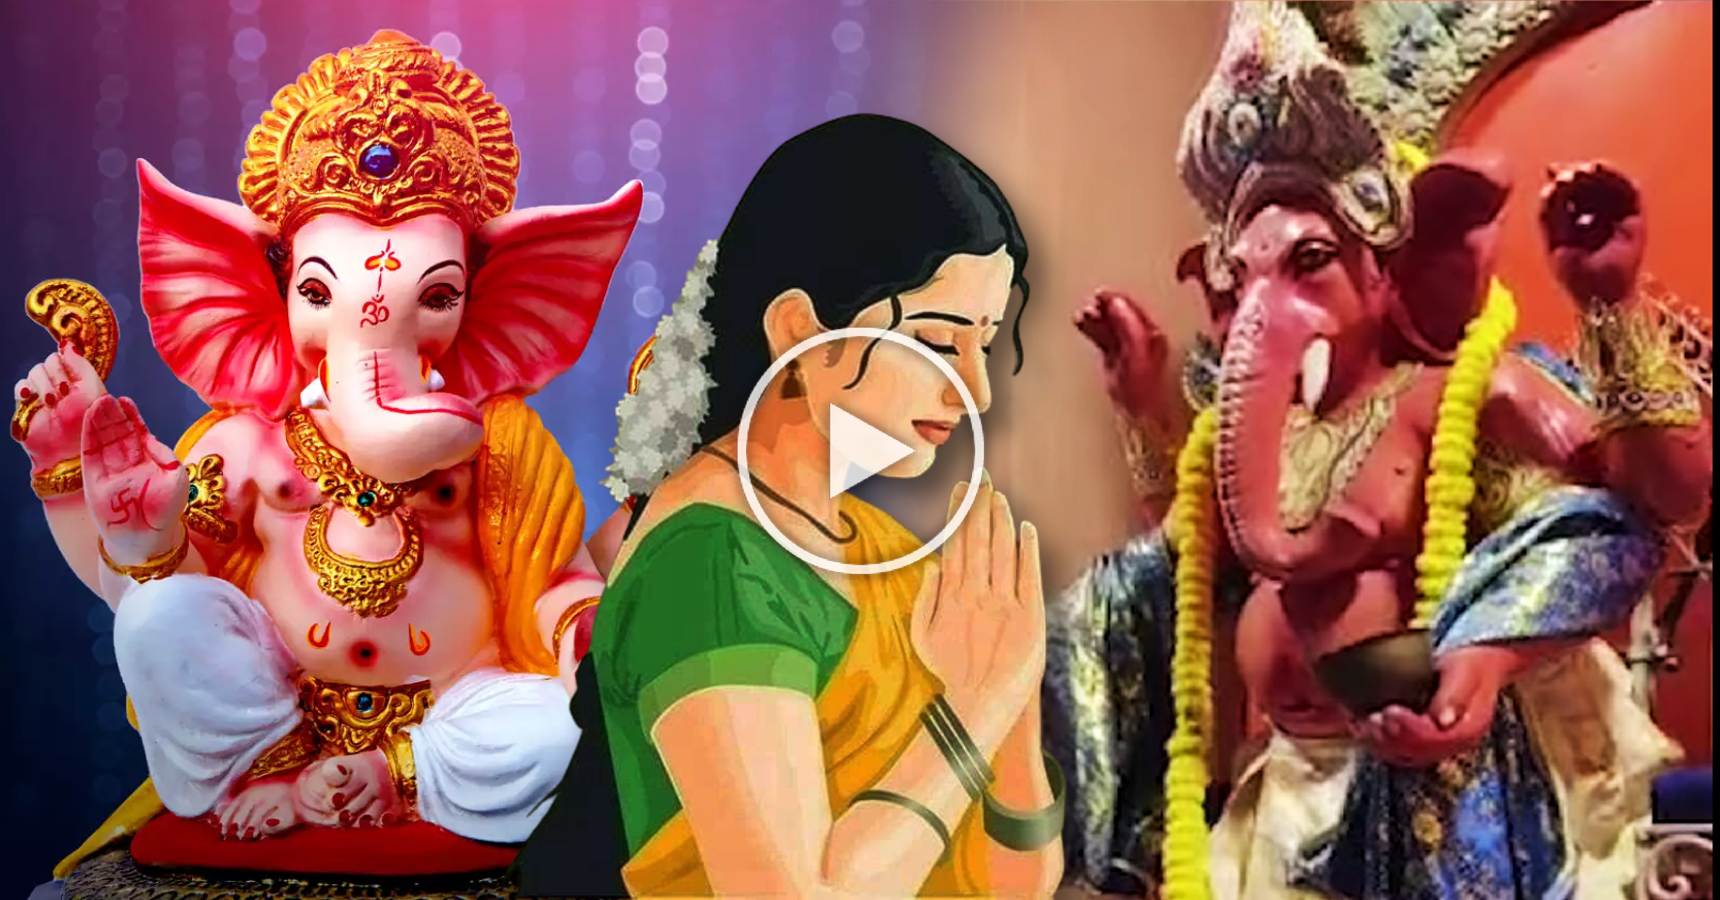 Ganesh Puja video at Amra Sobai club Maniktala goes viral on social media